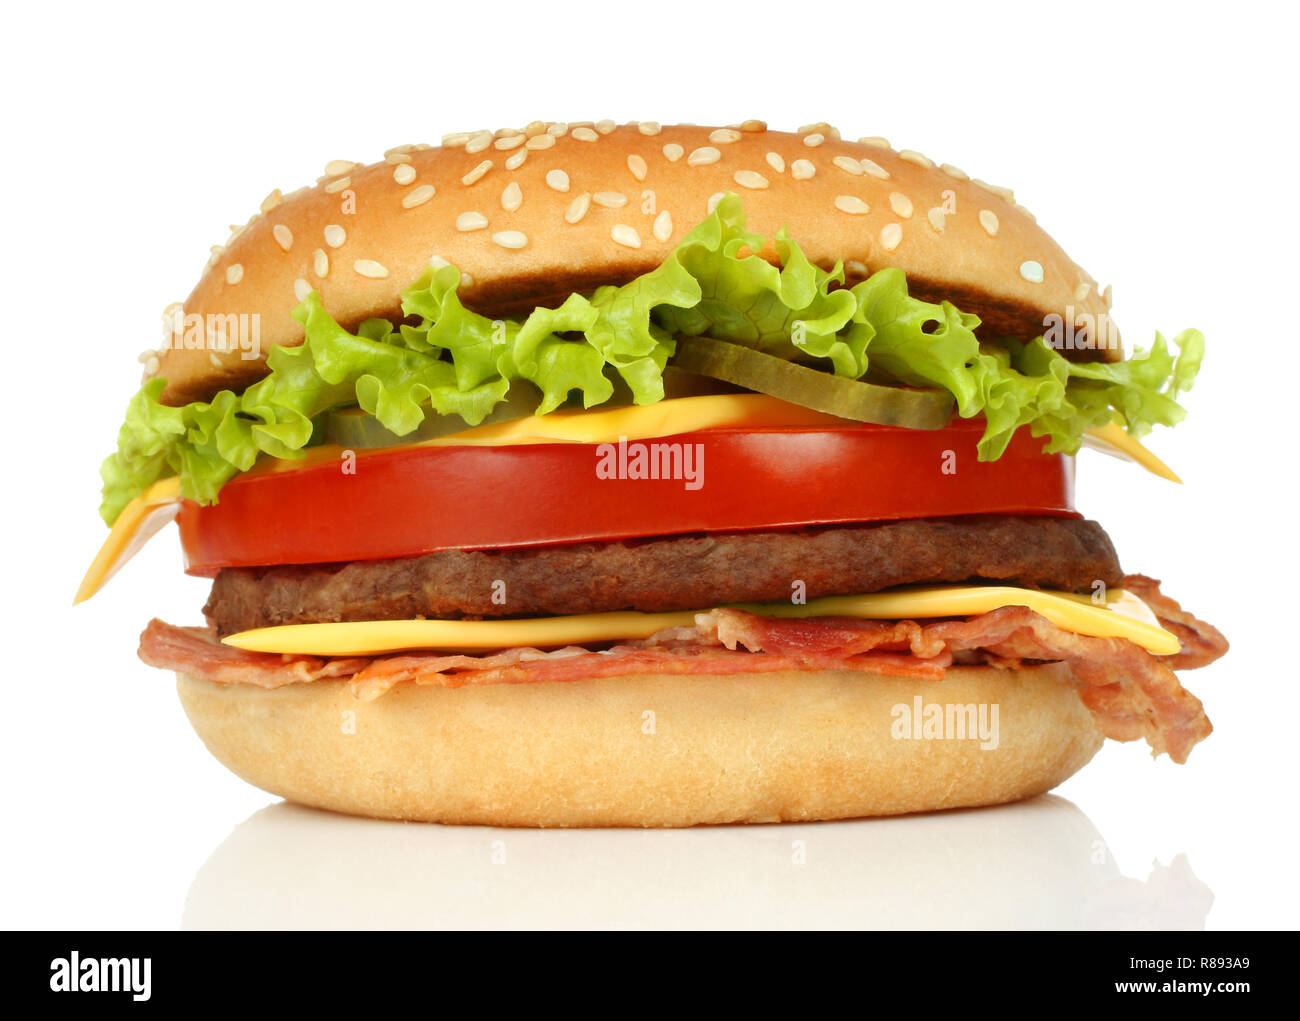 Big hamburger on white background close-up Stock Photo